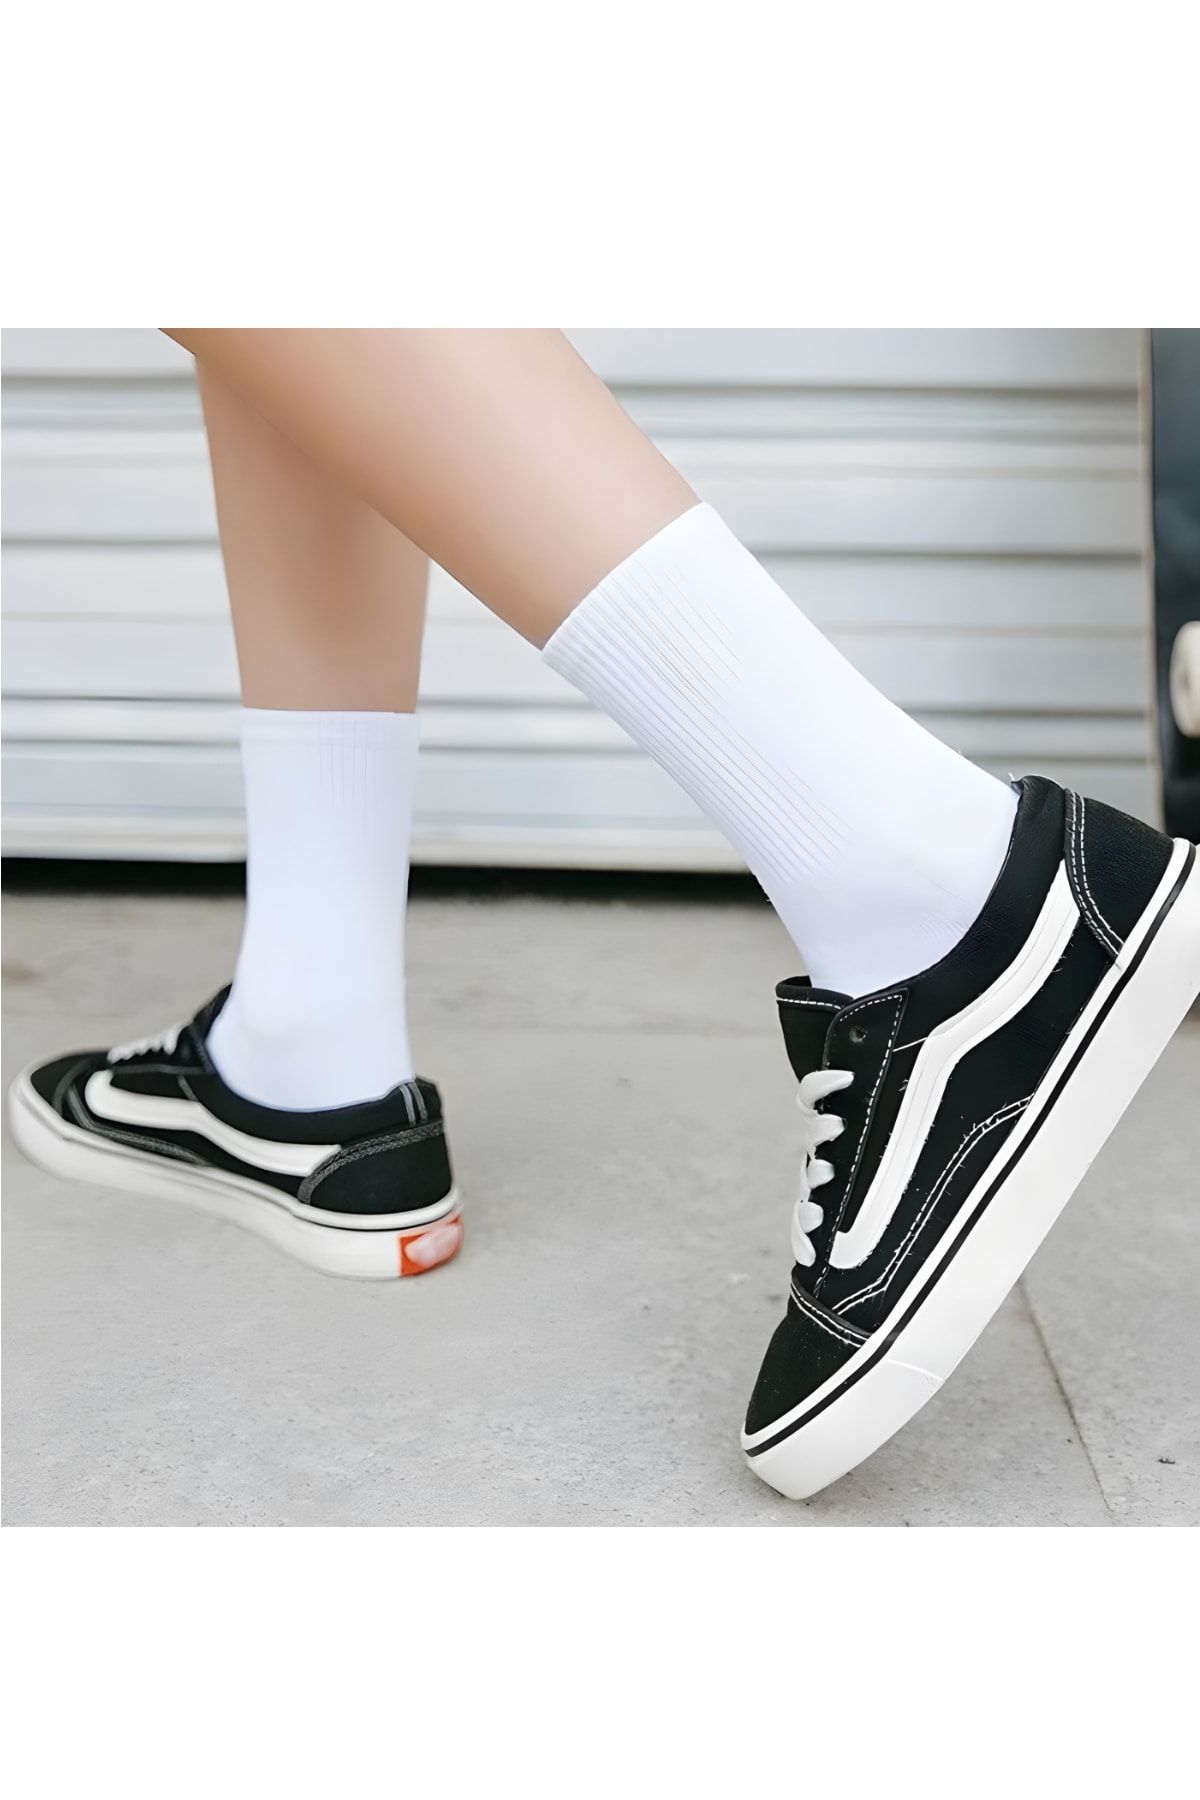 CFNY SOCKS 4 Çift Ekonomik Paket Erkek Kadın Unisex Soket Uzun Tenis Corap Siyah Beyaz Düz Kolej Çoraplar